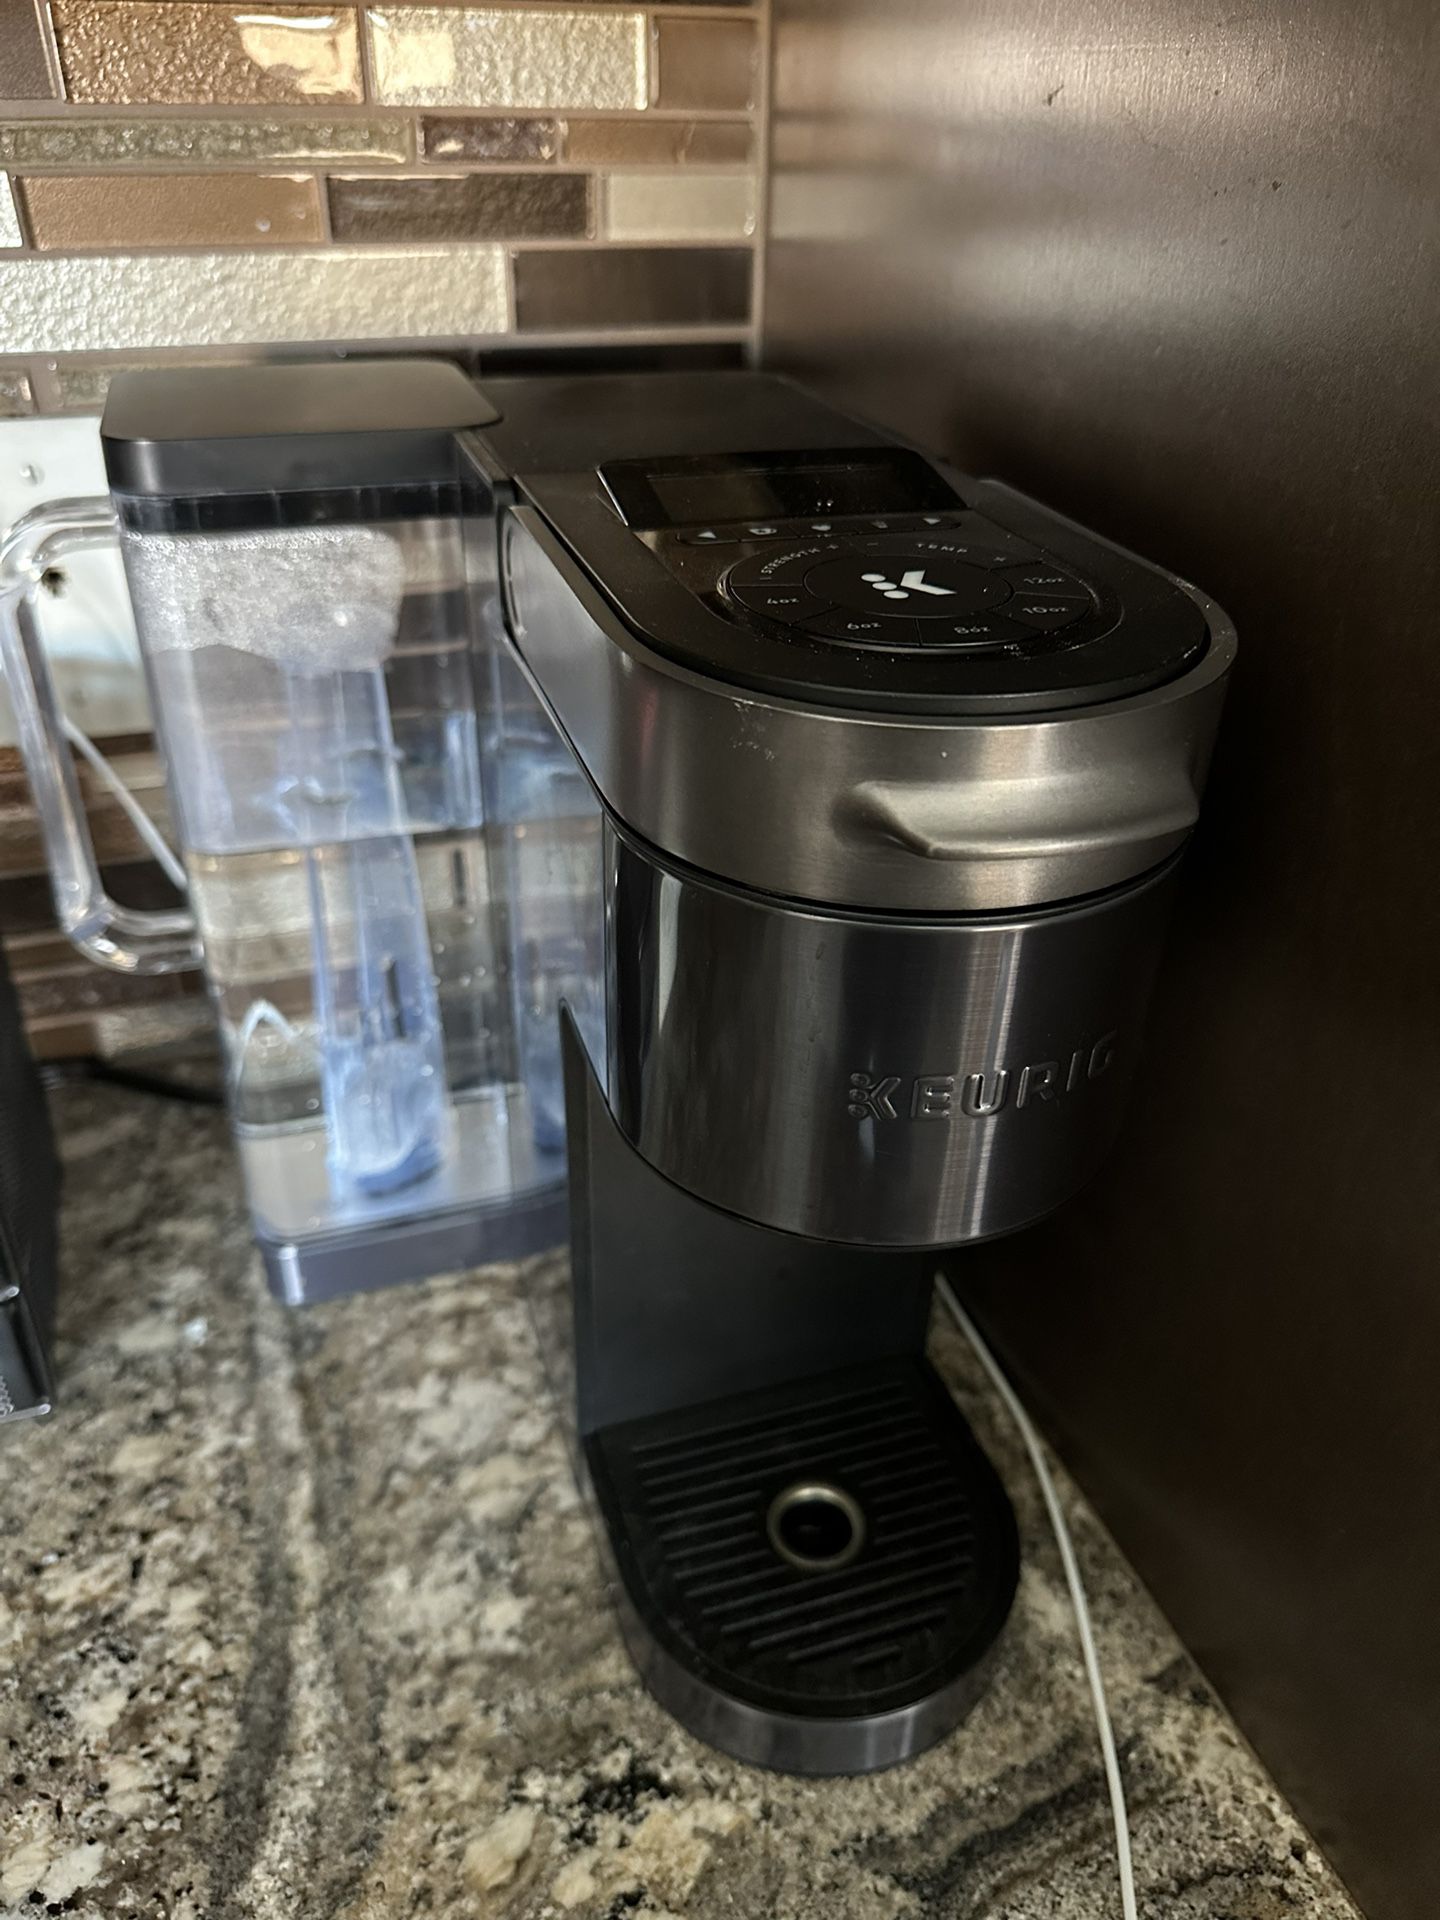 Keurig K-supreme Plus Smart Coffee Maker